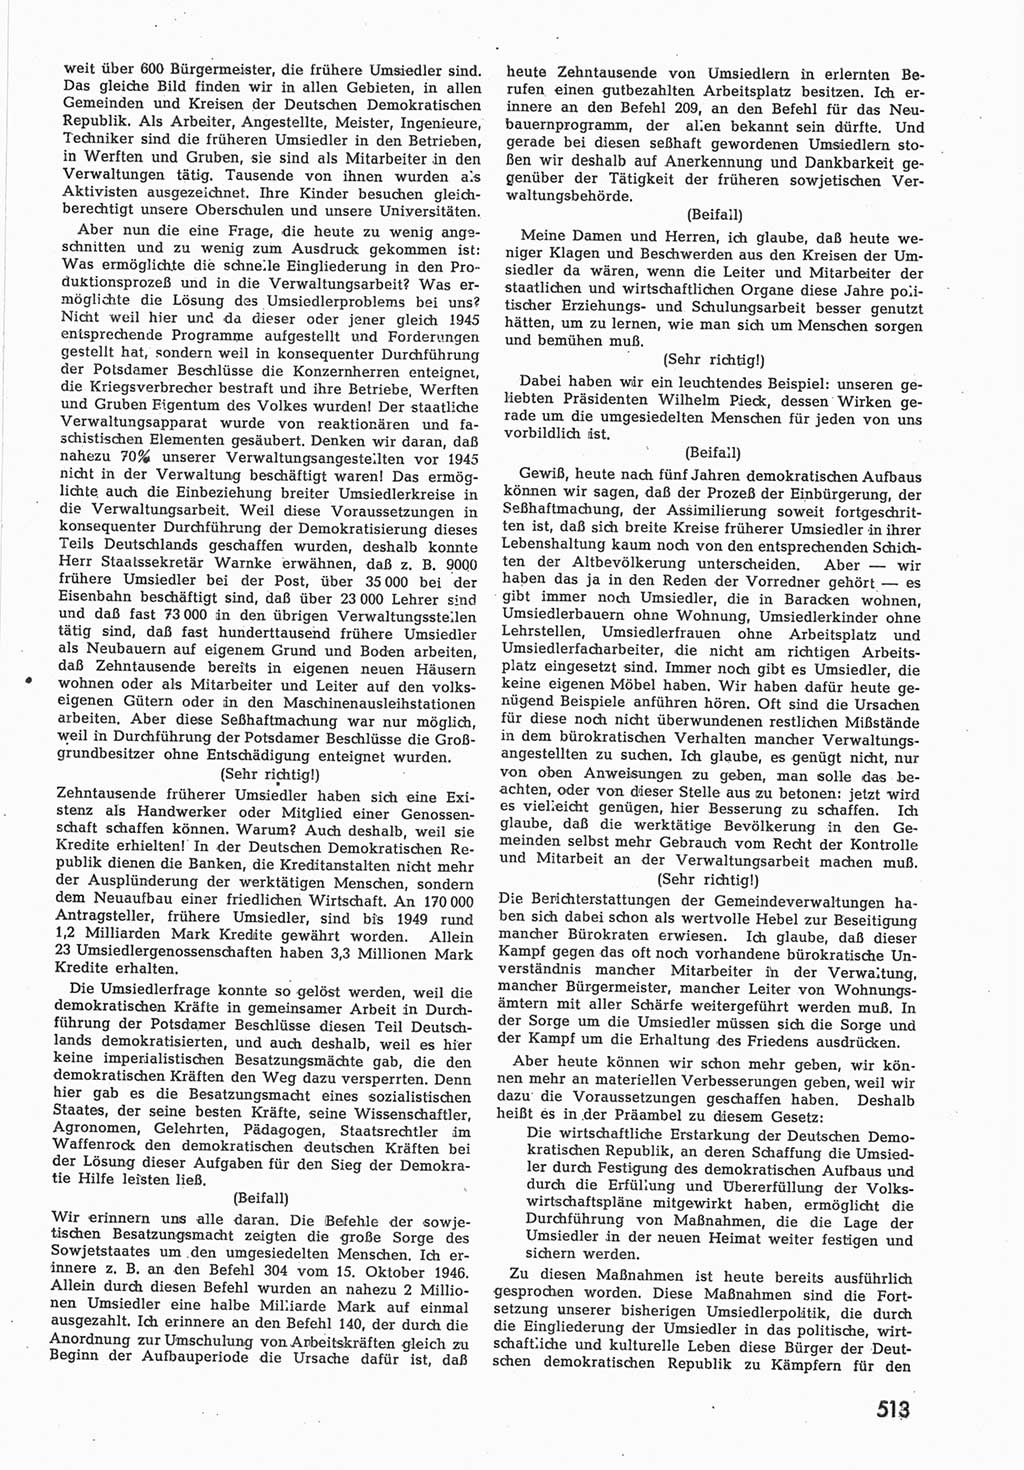 Provisorische Volkskammer (VK) der Deutschen Demokratischen Republik (DDR) 1949-1950, Dokument 531 (Prov. VK DDR 1949-1950, Dok. 531)